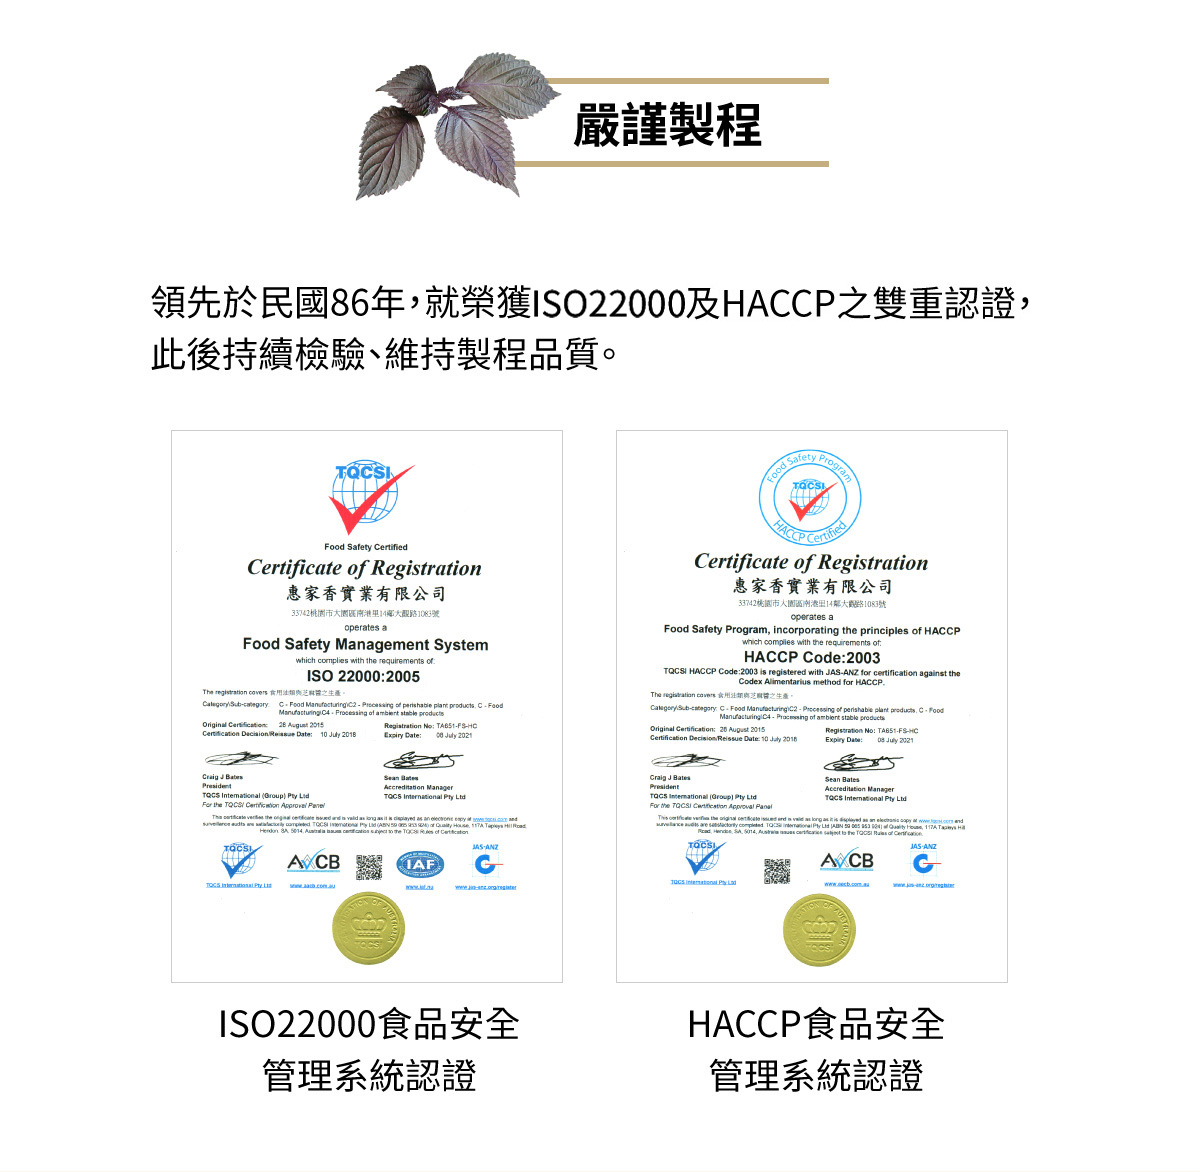 嚴謹製程 榮獲ISO9001及HACCP之雙重認證